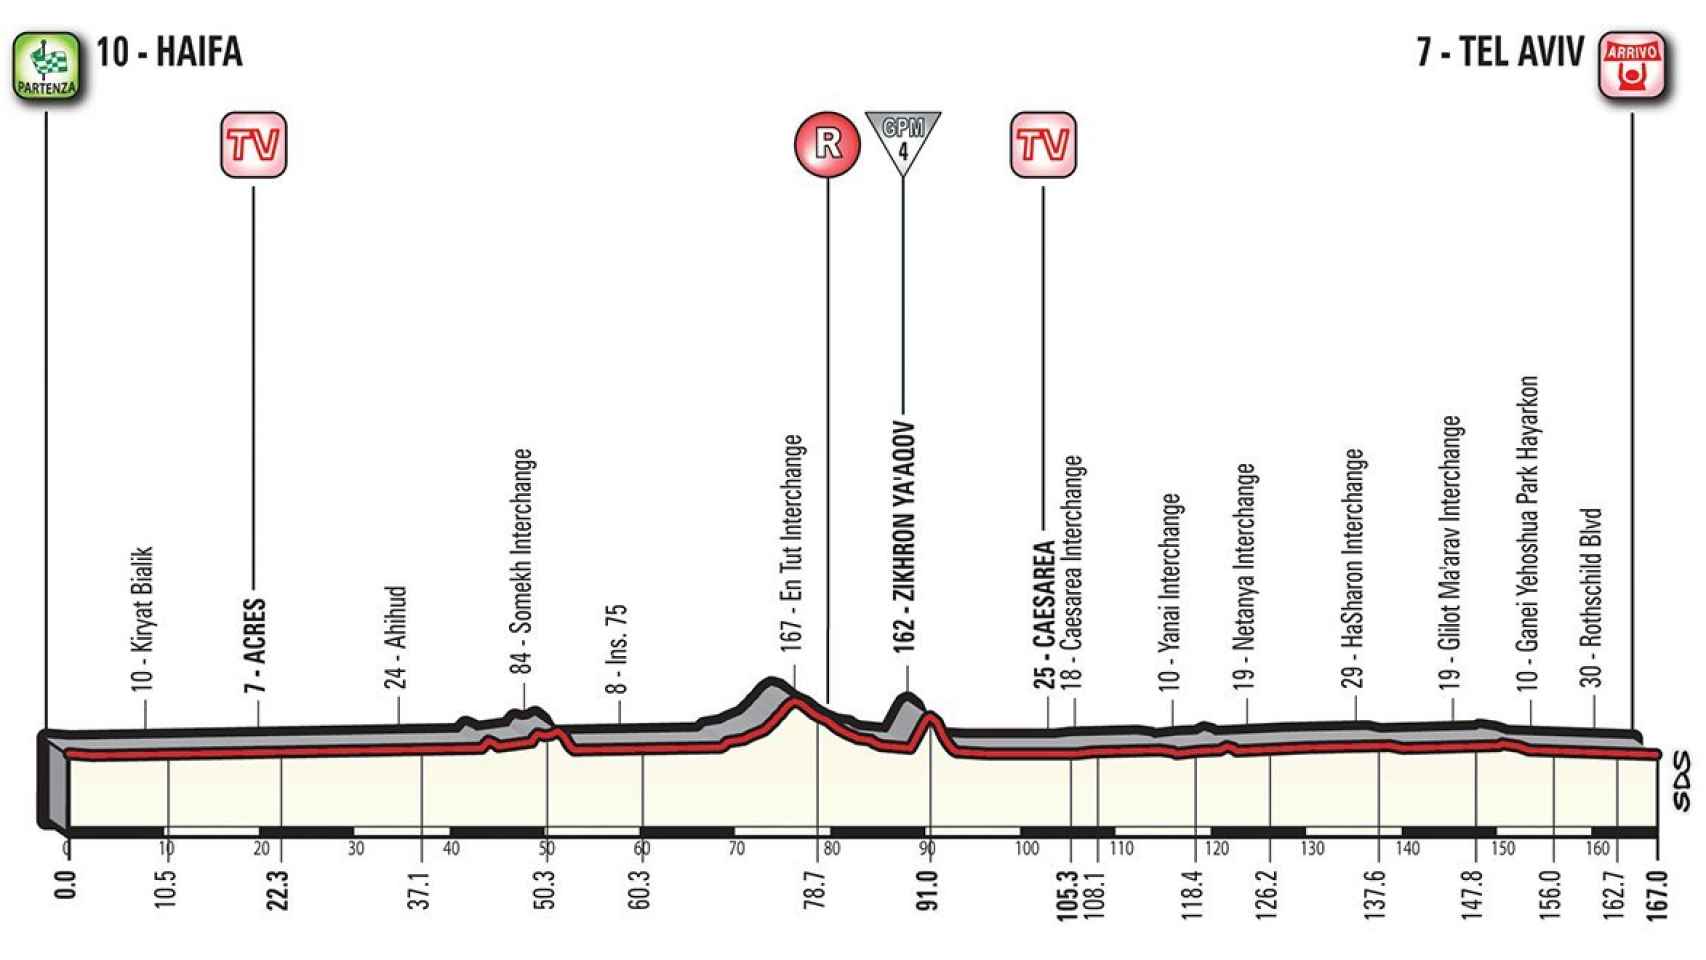 Perfil de la segunda etapa del Giro de Italia 2018.